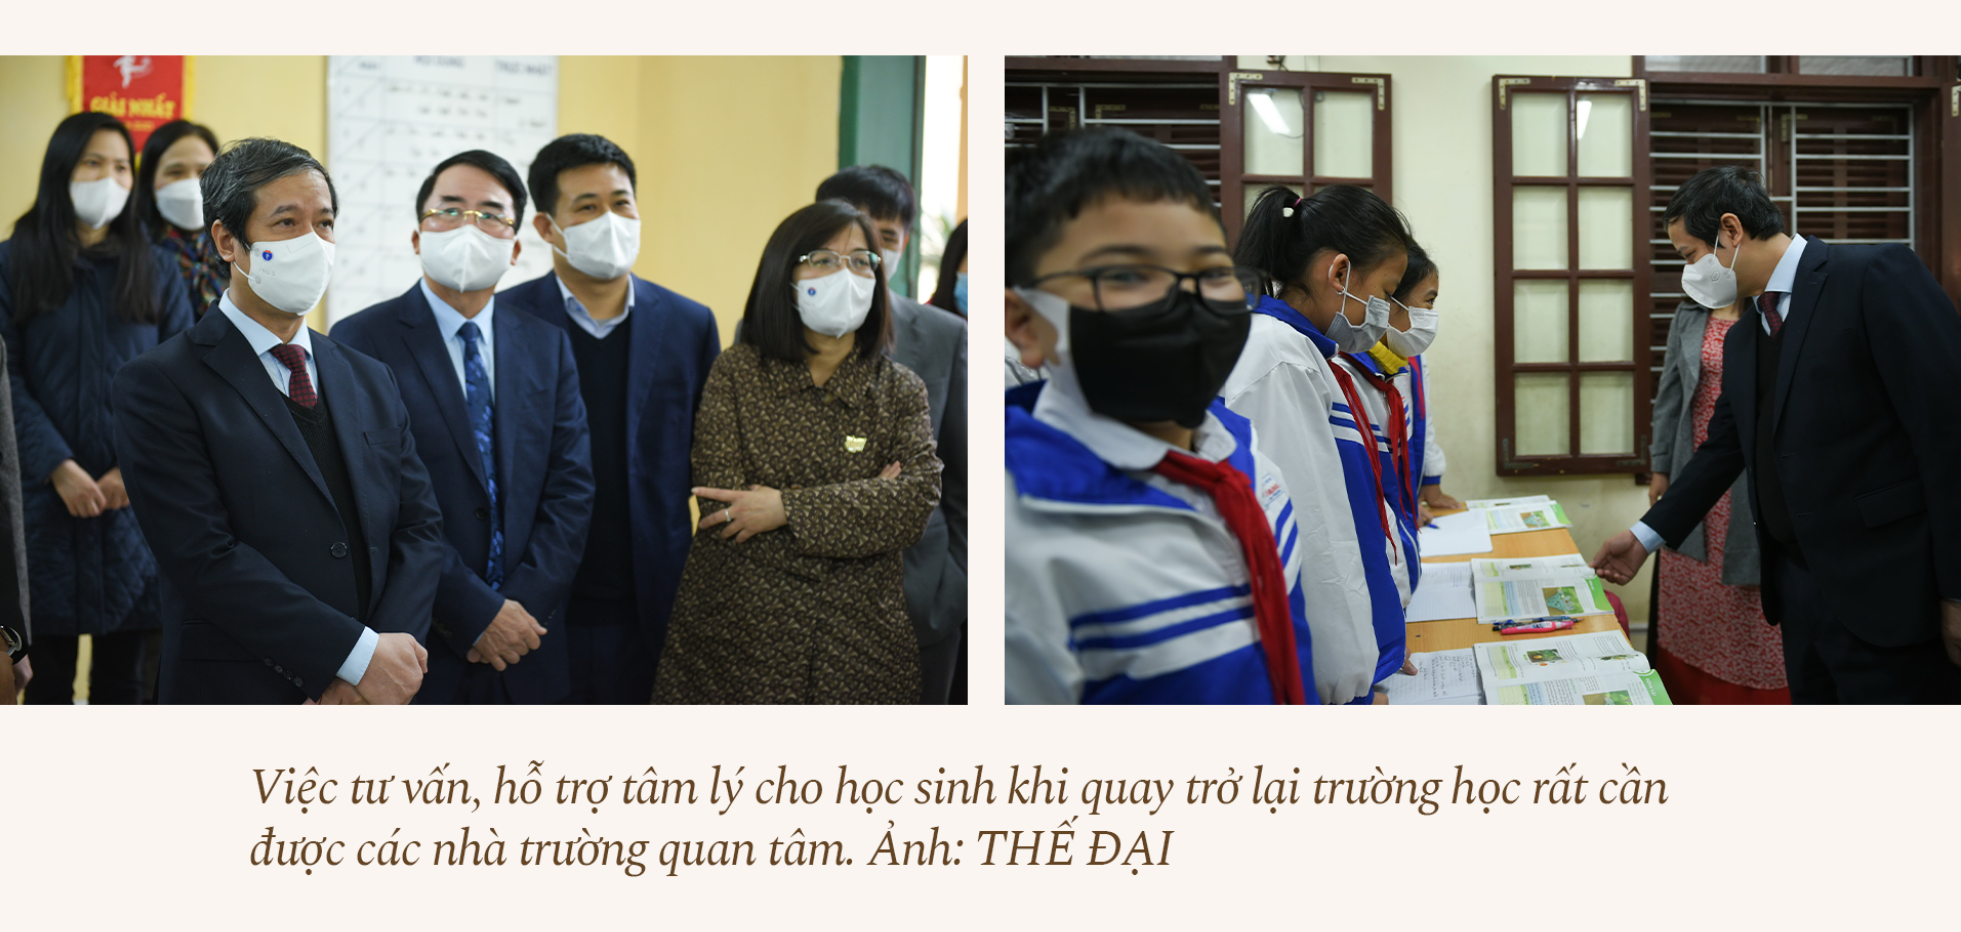 Bộ trưởng Bộ GD&ĐT Nguyễn Kim Sơn: Bù đắp kiến thức, tái thiết giáo dục - ảnh 7